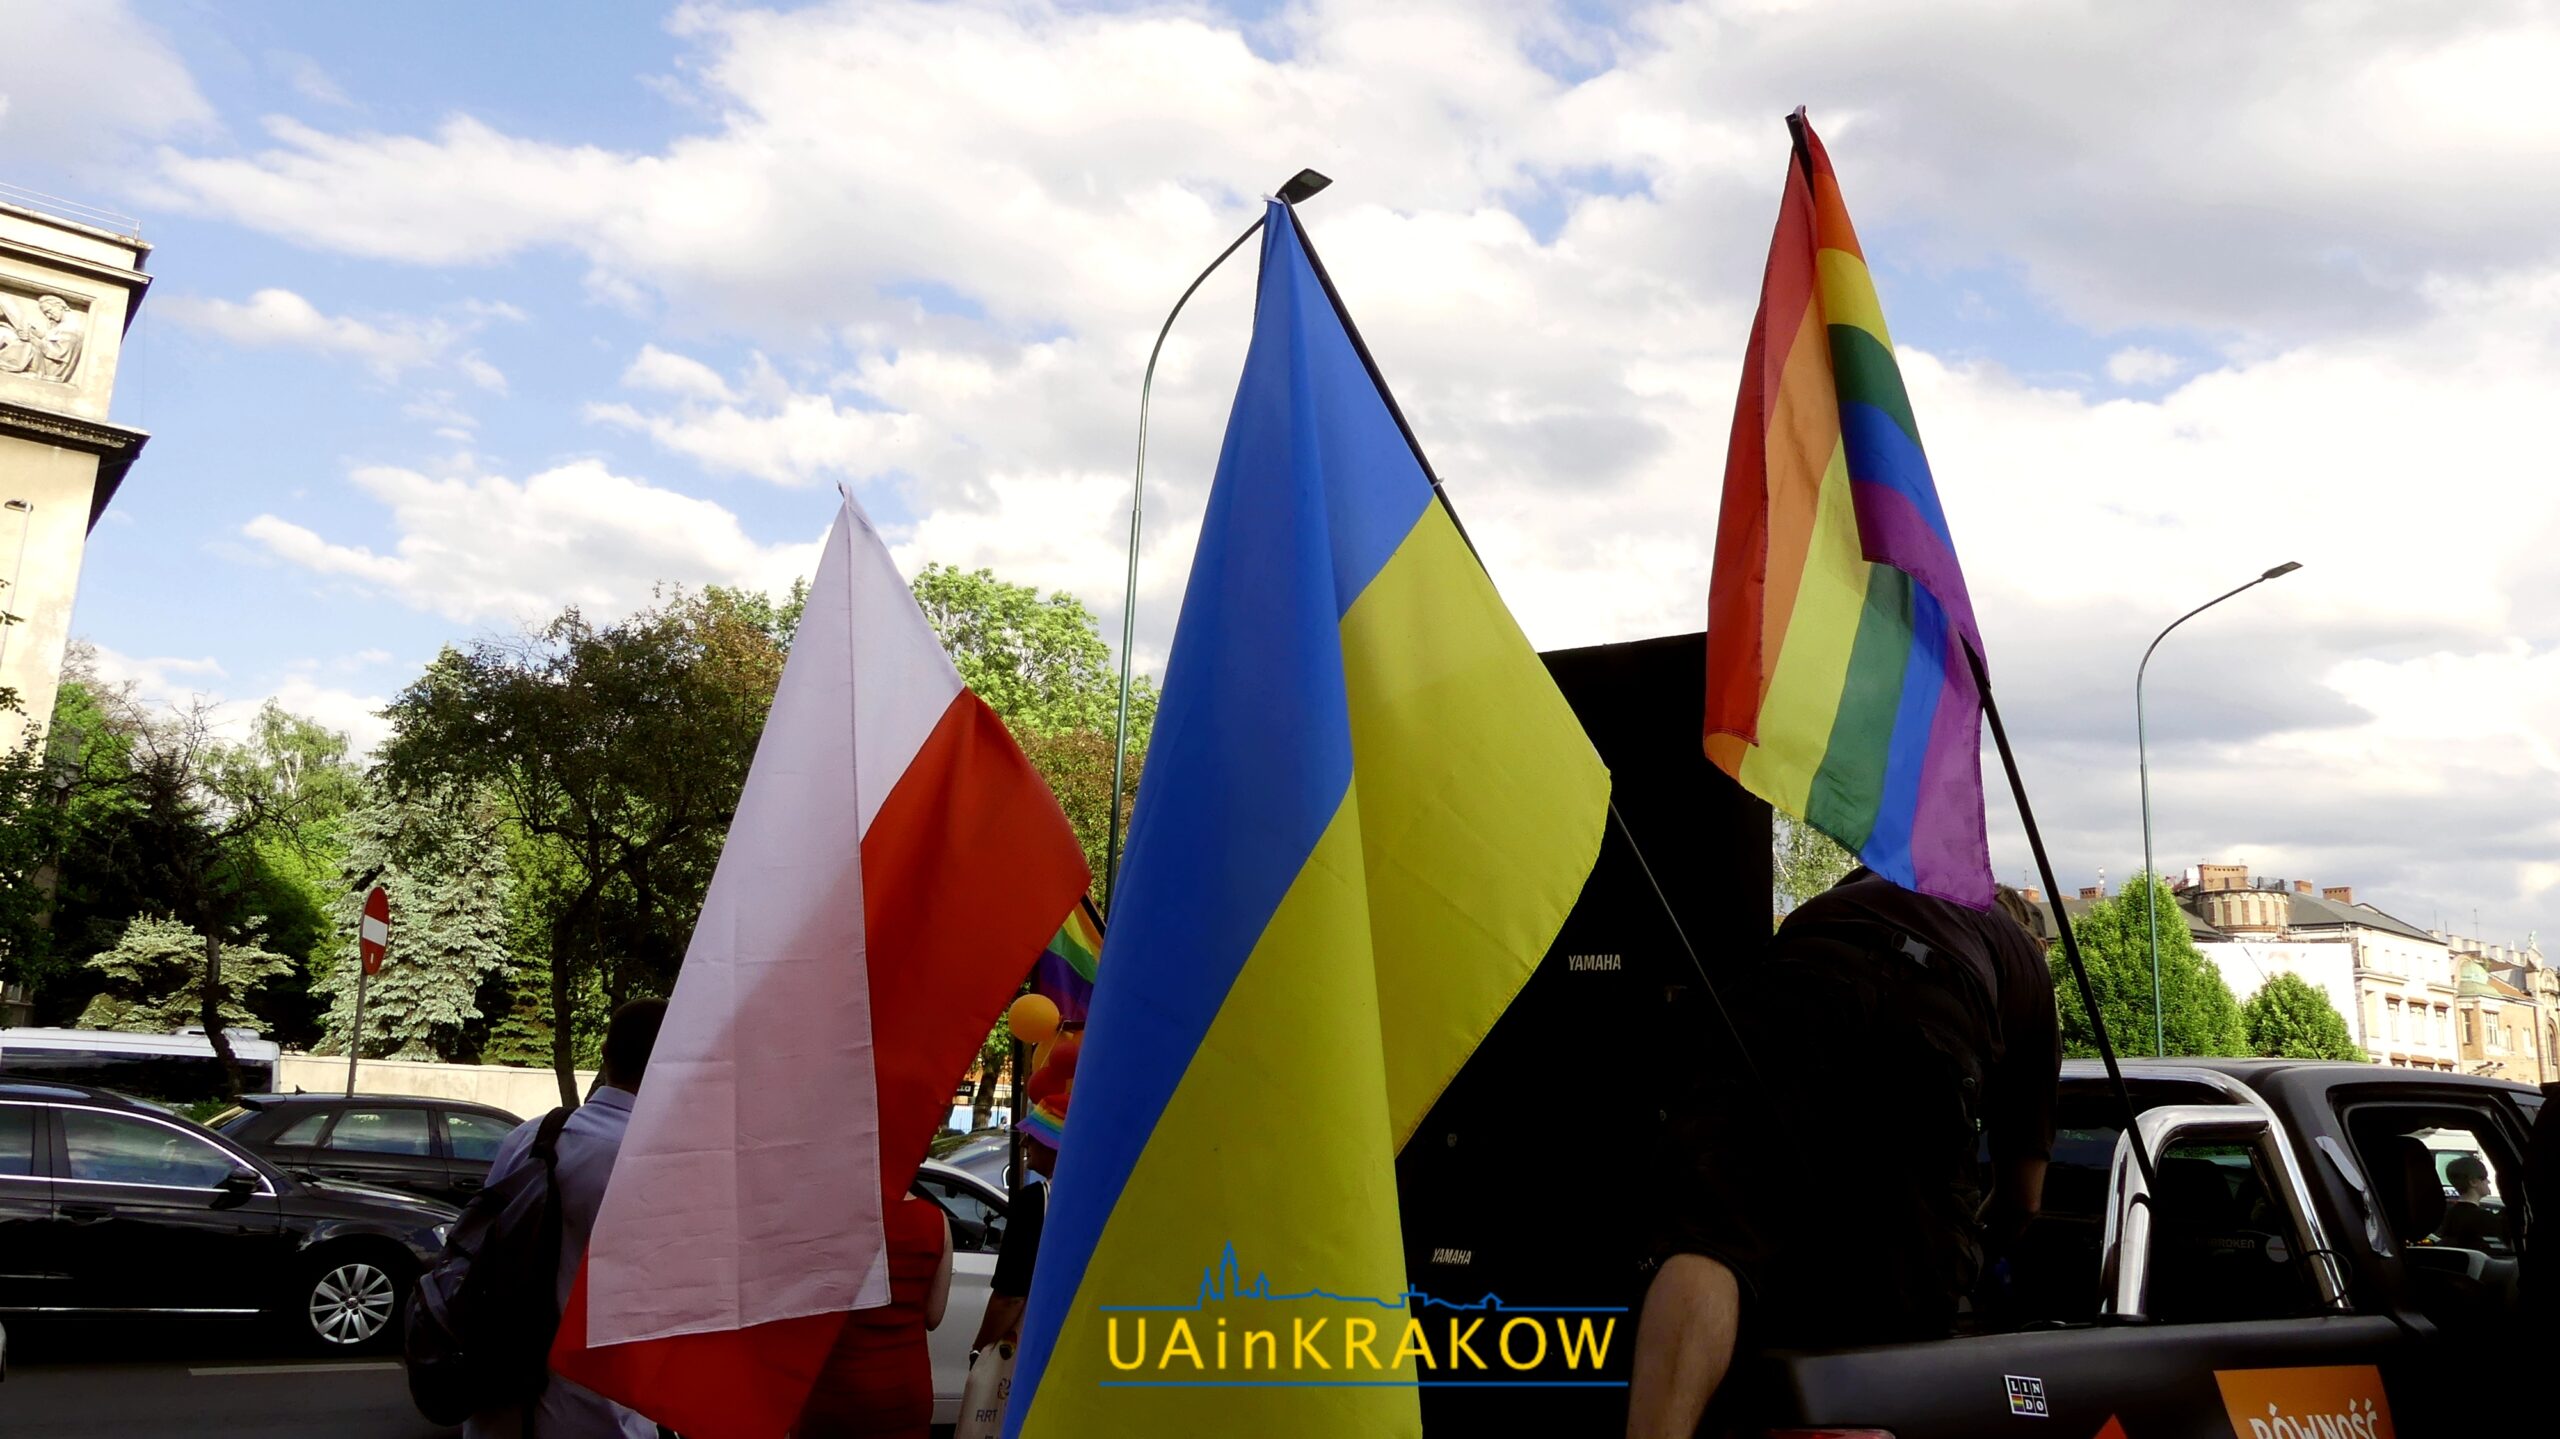 Кохання, рівність, толерантність: як пройшов Марш рівності в Кракові [ФОТО] 43 scaled